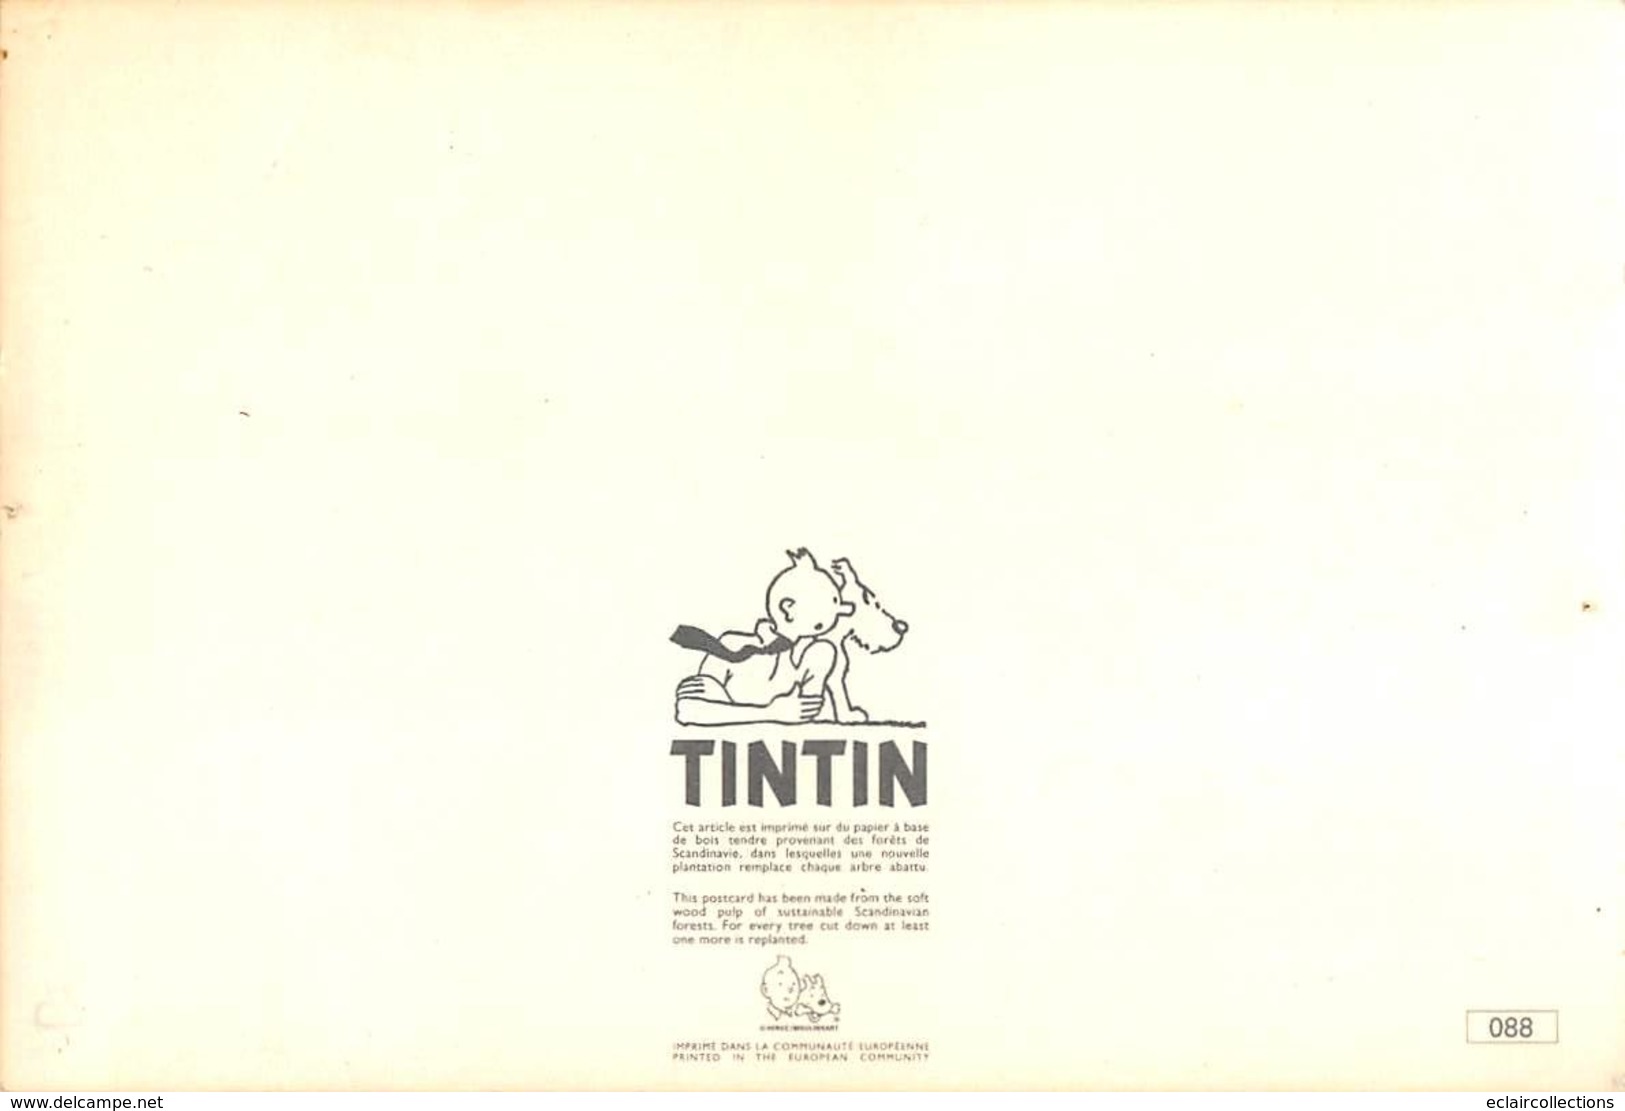 Thème . Bande dessinée . Tintin   5 cartes Vintage. Edition Yvon et autres   (voir scan)